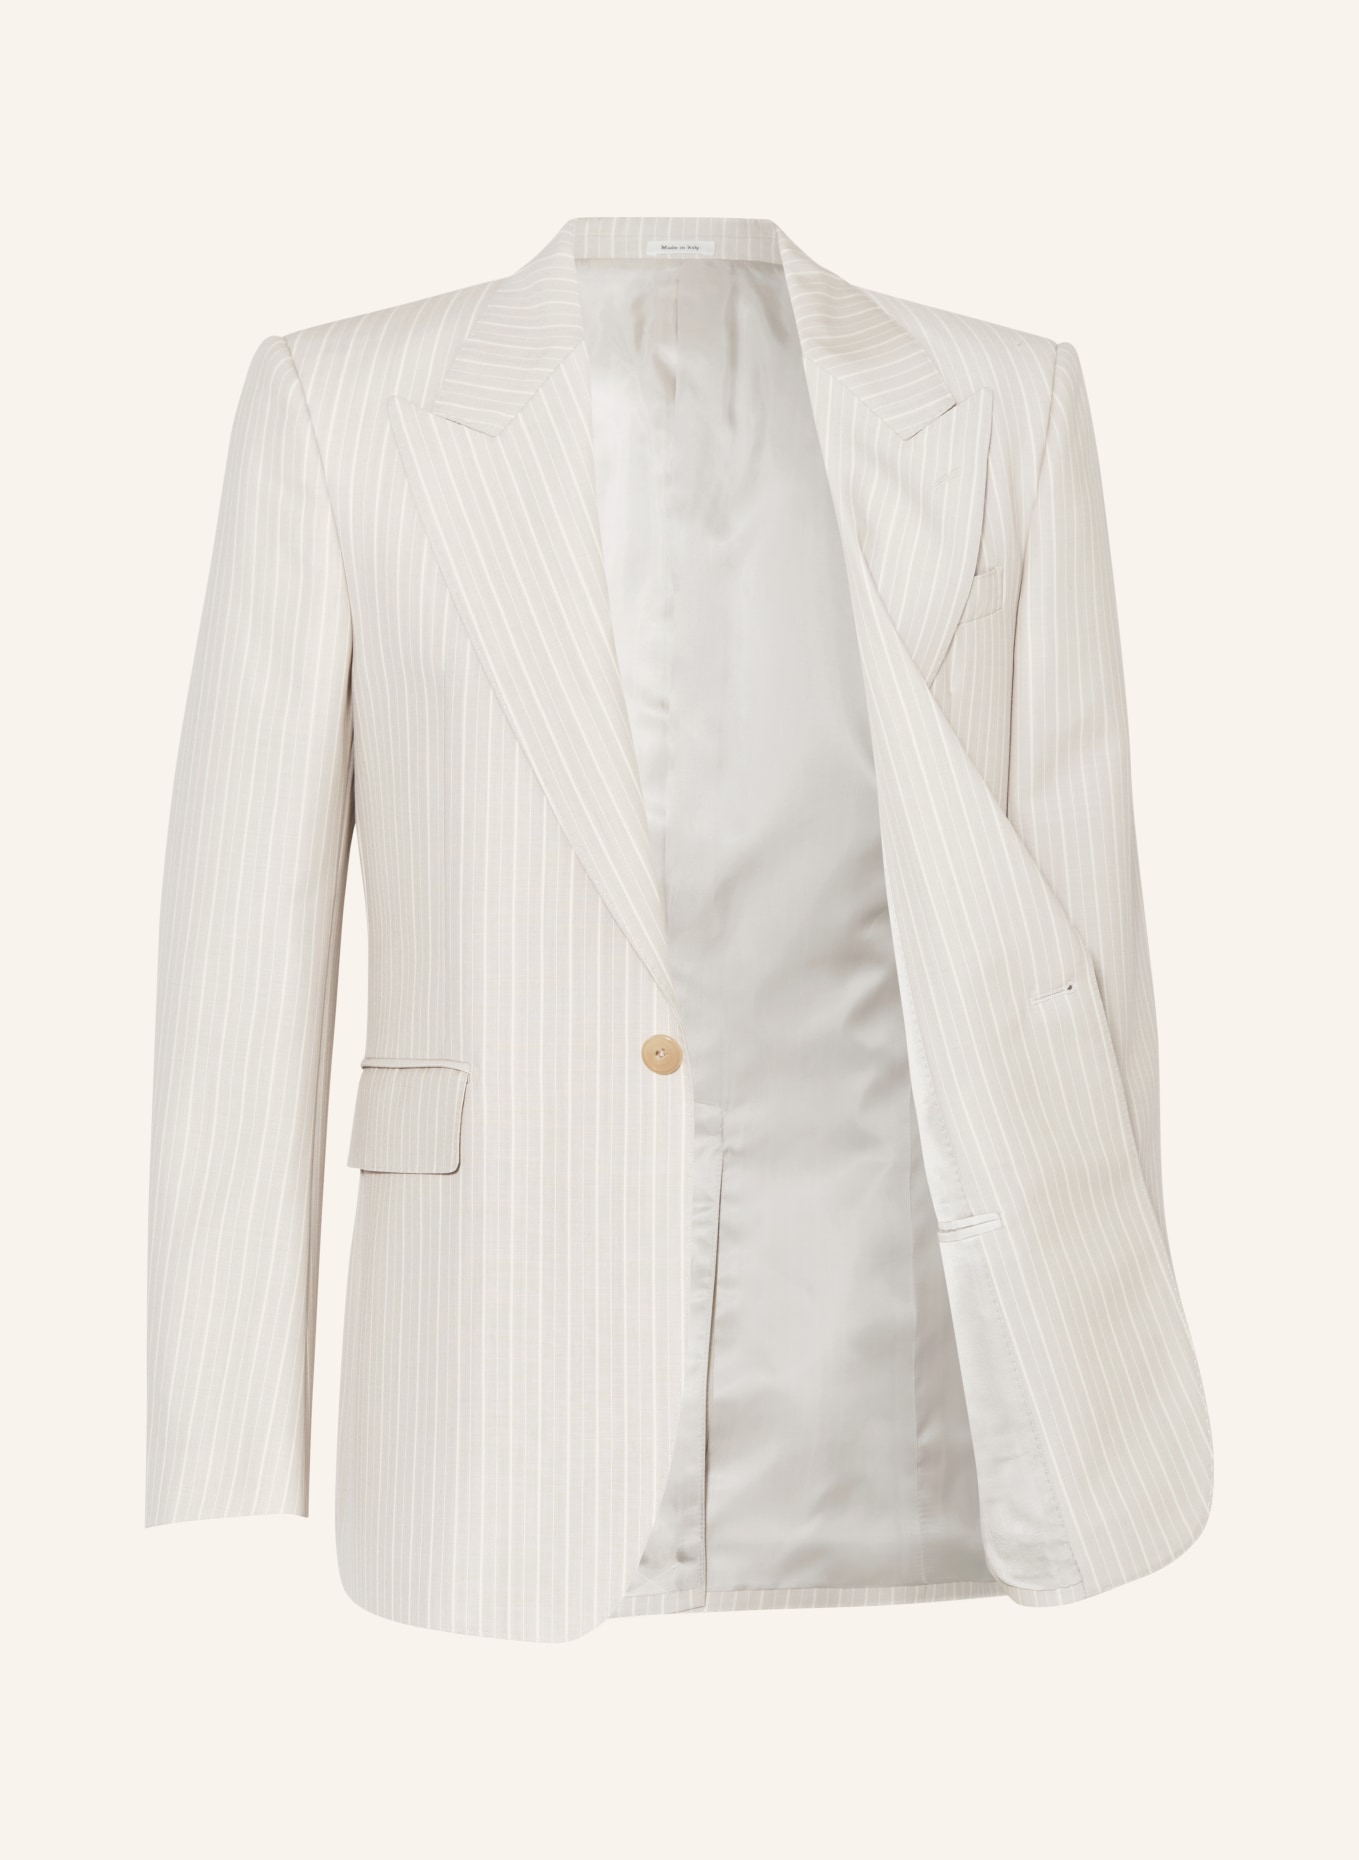 Alexander McQUEEN Suit jacket regular fit, Color: 1196 ICE GREY (Image 4)